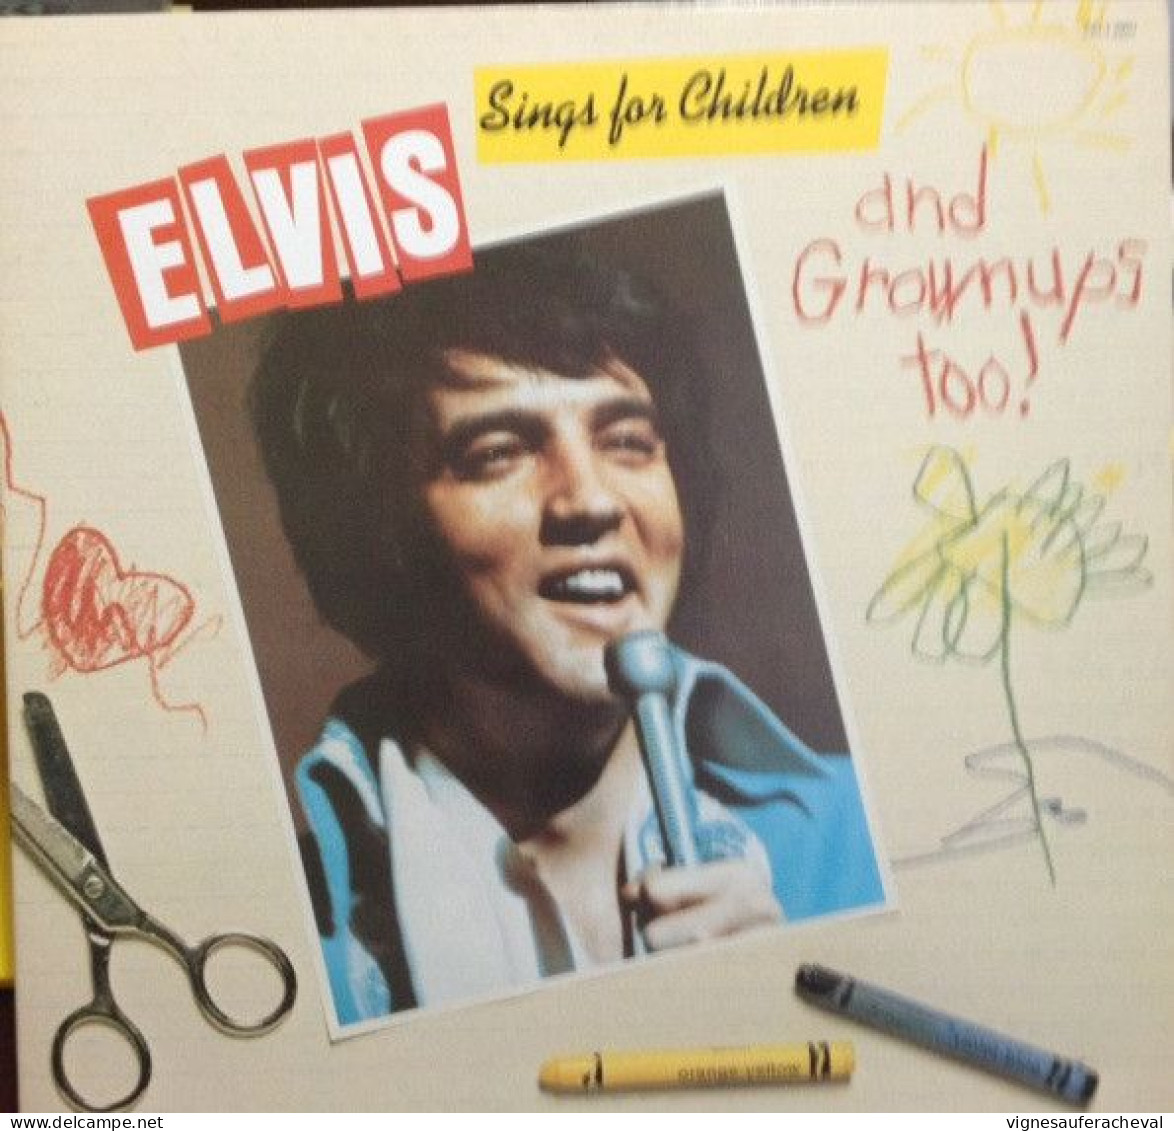 Elvis Presley - Elvis Sings For Children And Grownups Too!! - Otros - Canción Inglesa